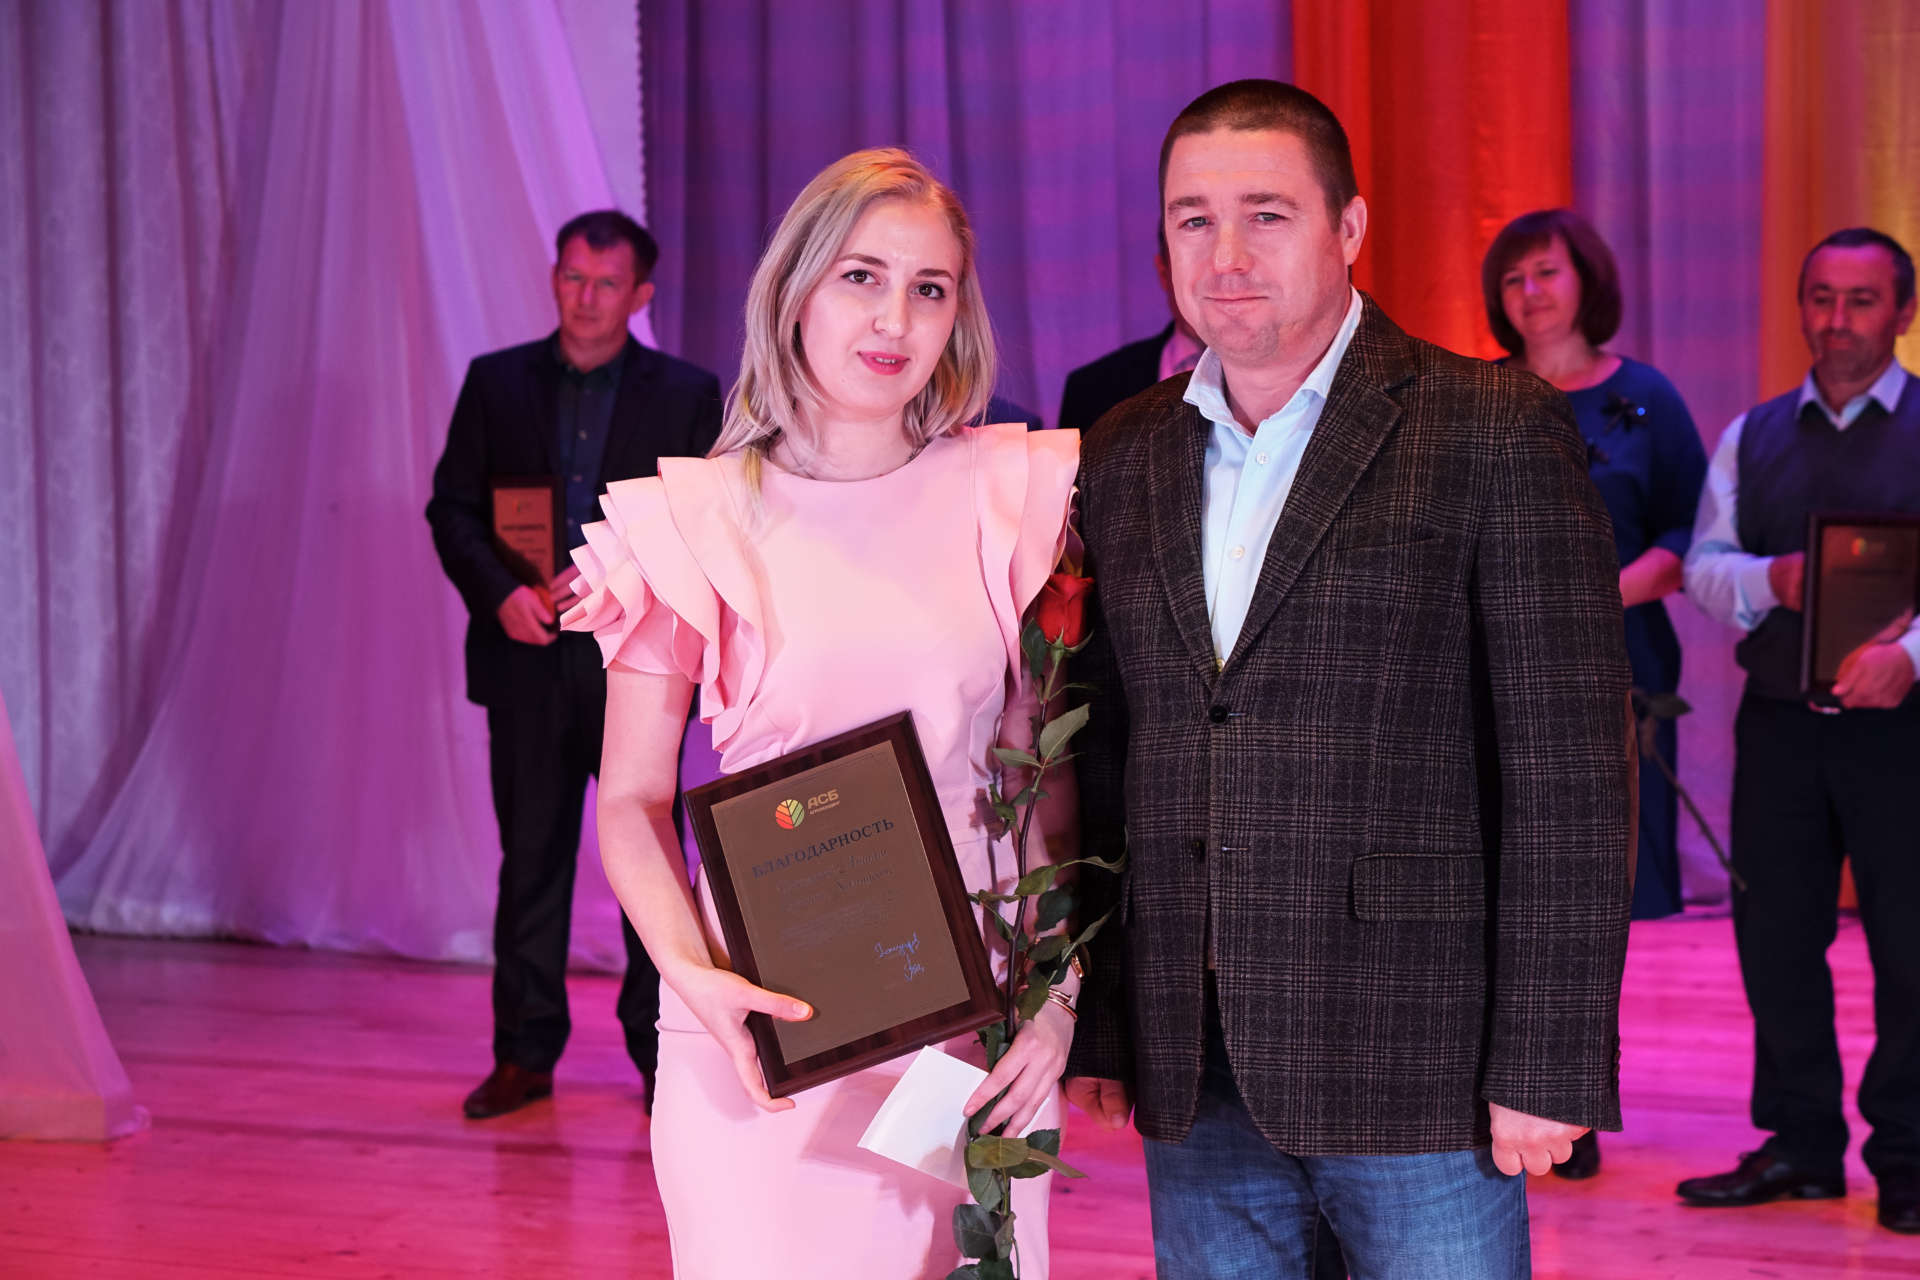 В Новоалександровске наградили лучших сотрудников агрохолдинга «АСБ»!